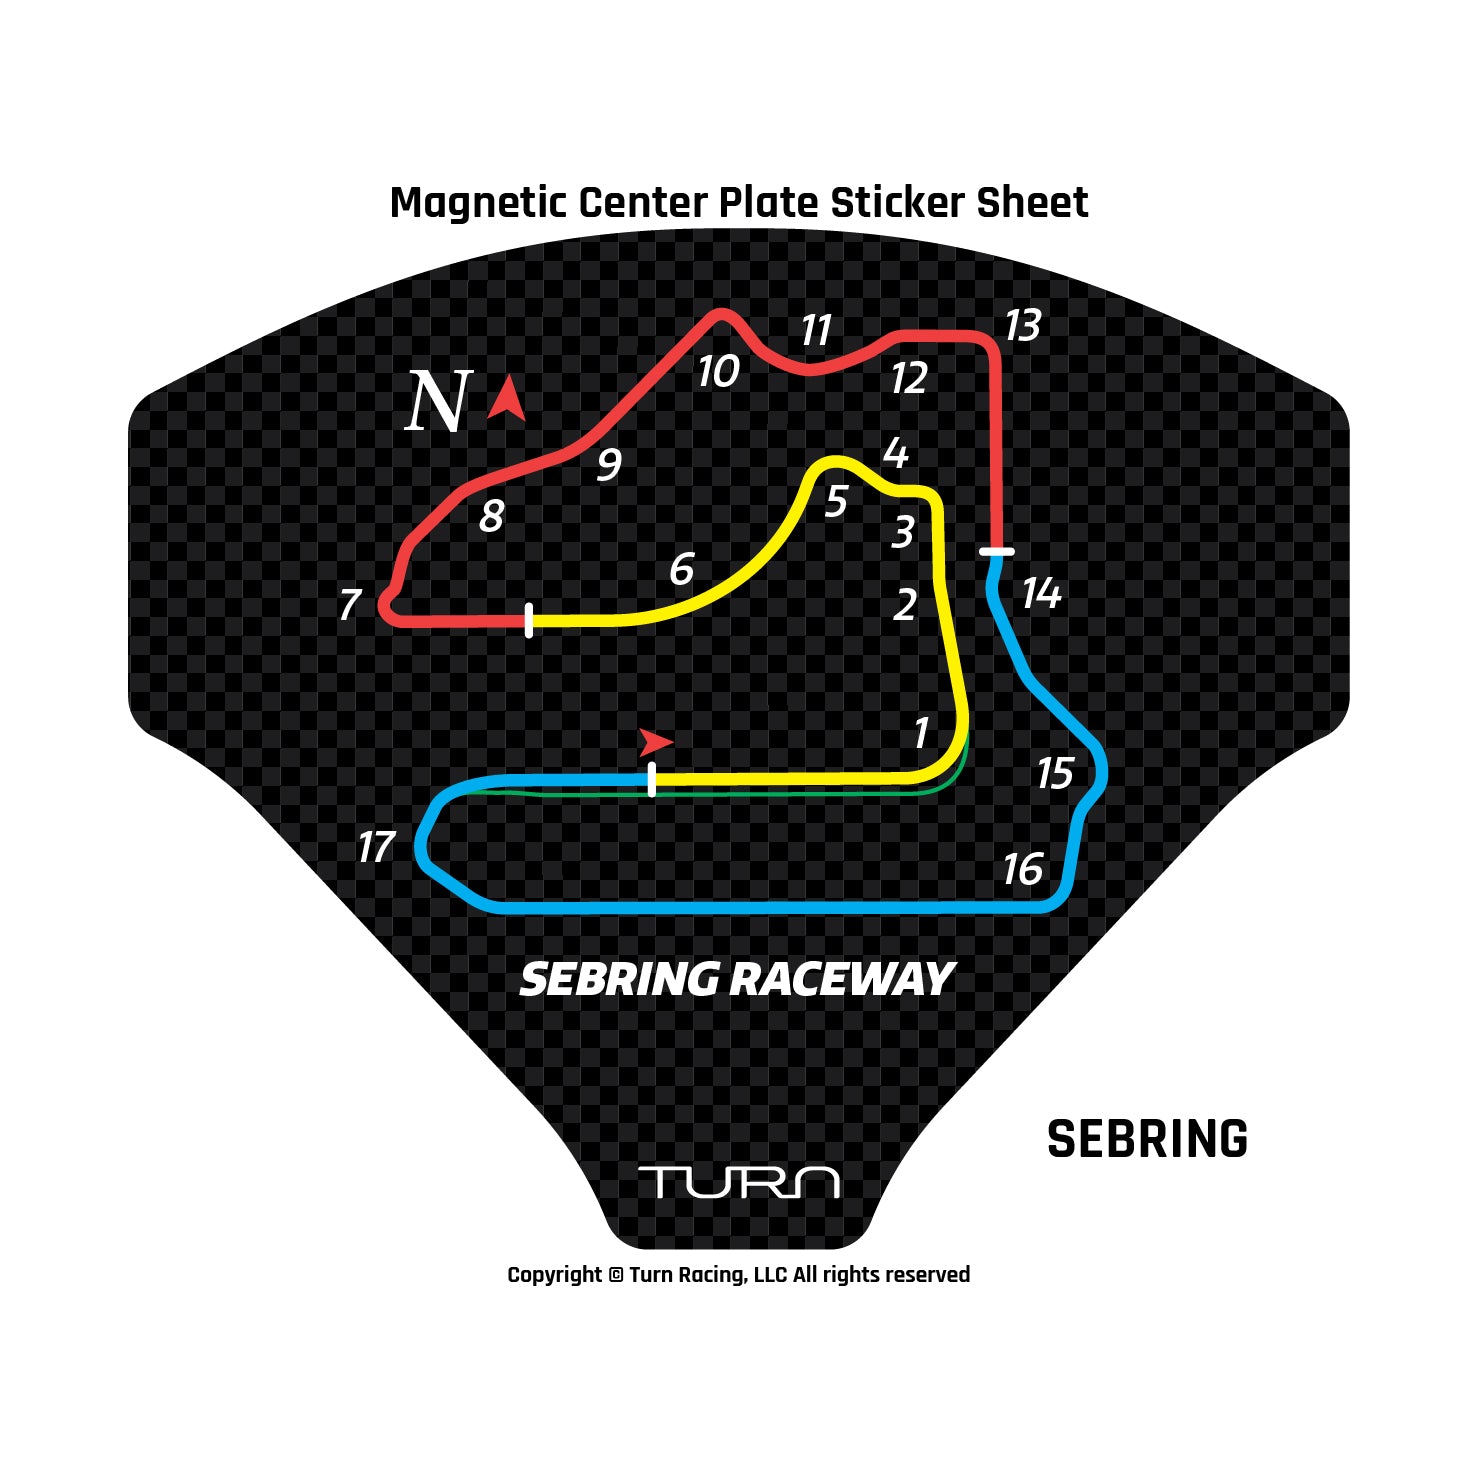 MCP Sticker Sheet Circuit Map Sebring